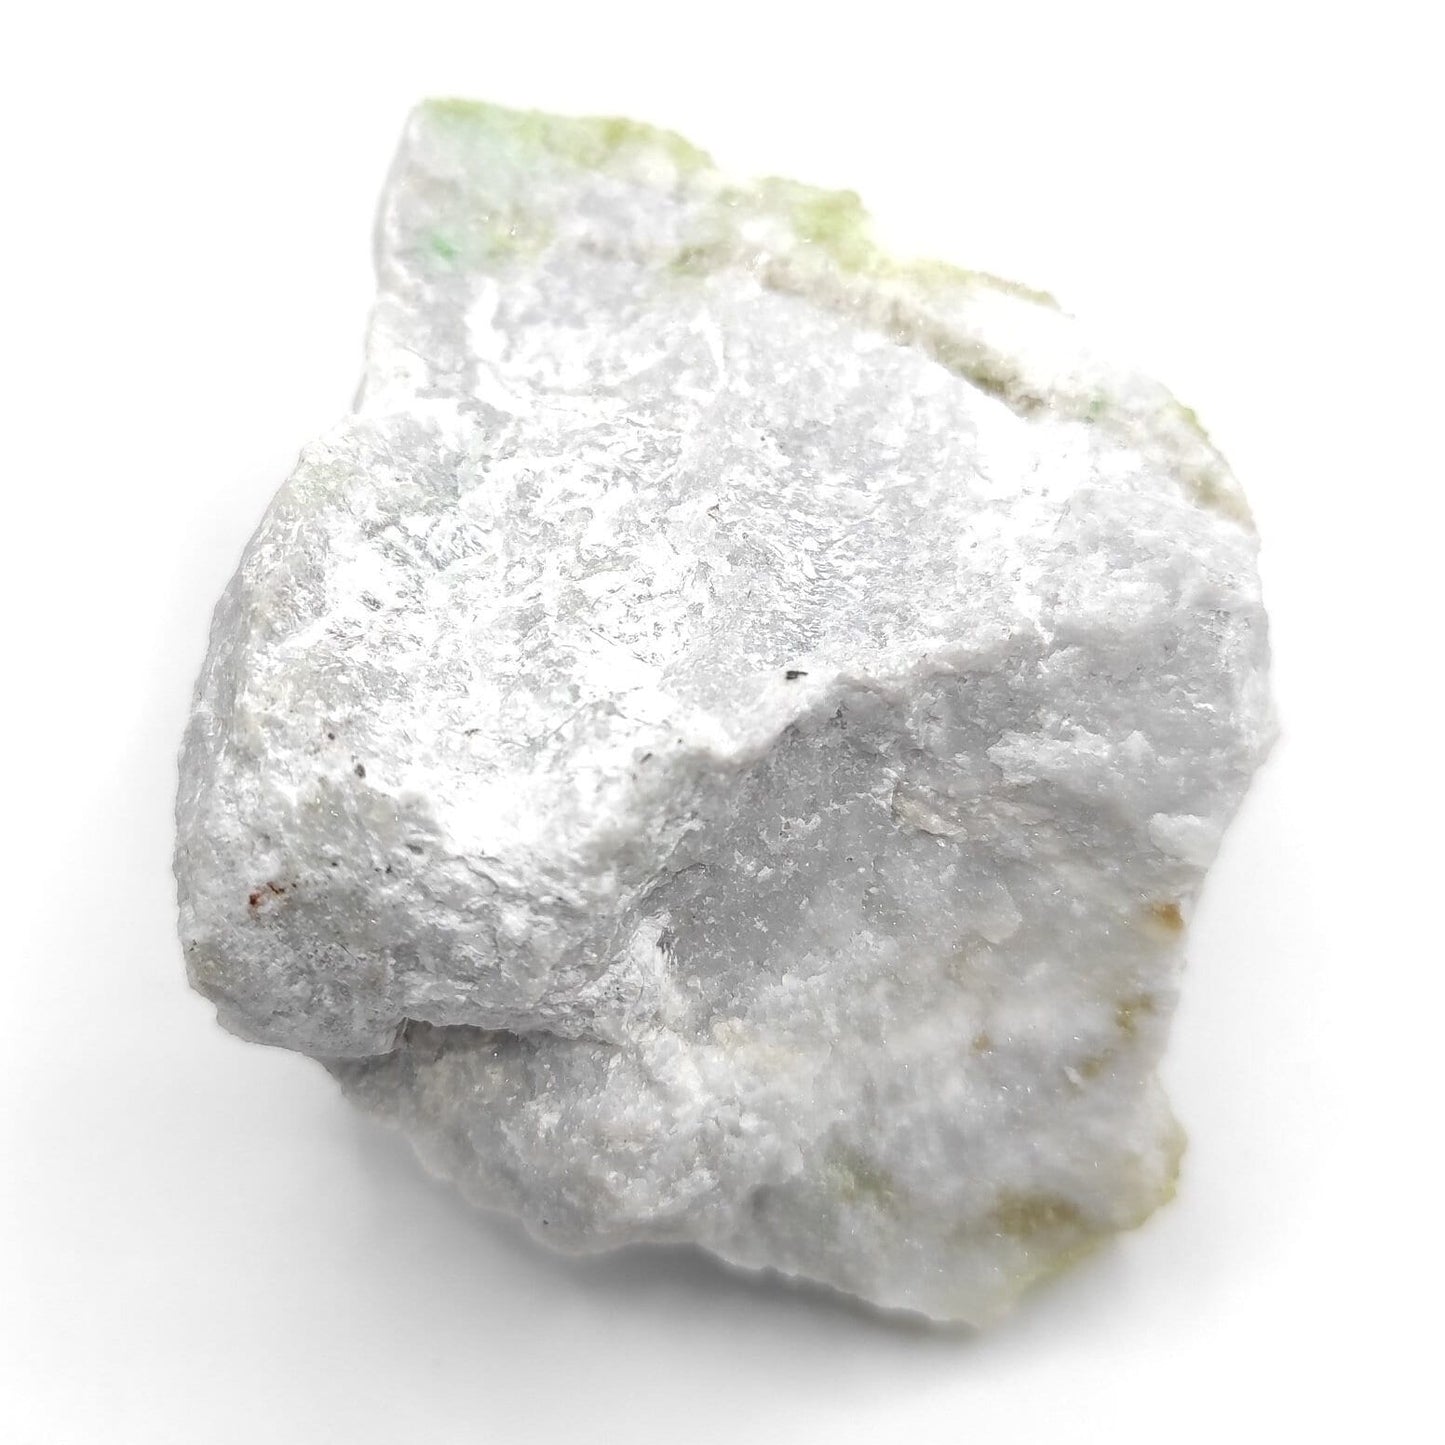 2016 Find - 80g Vesuvianite with Diopside - Mineral Specimen - Vesuvianite Crystal - Jeffrey Mine, Asbestos, Quebec - Canadian Minerals